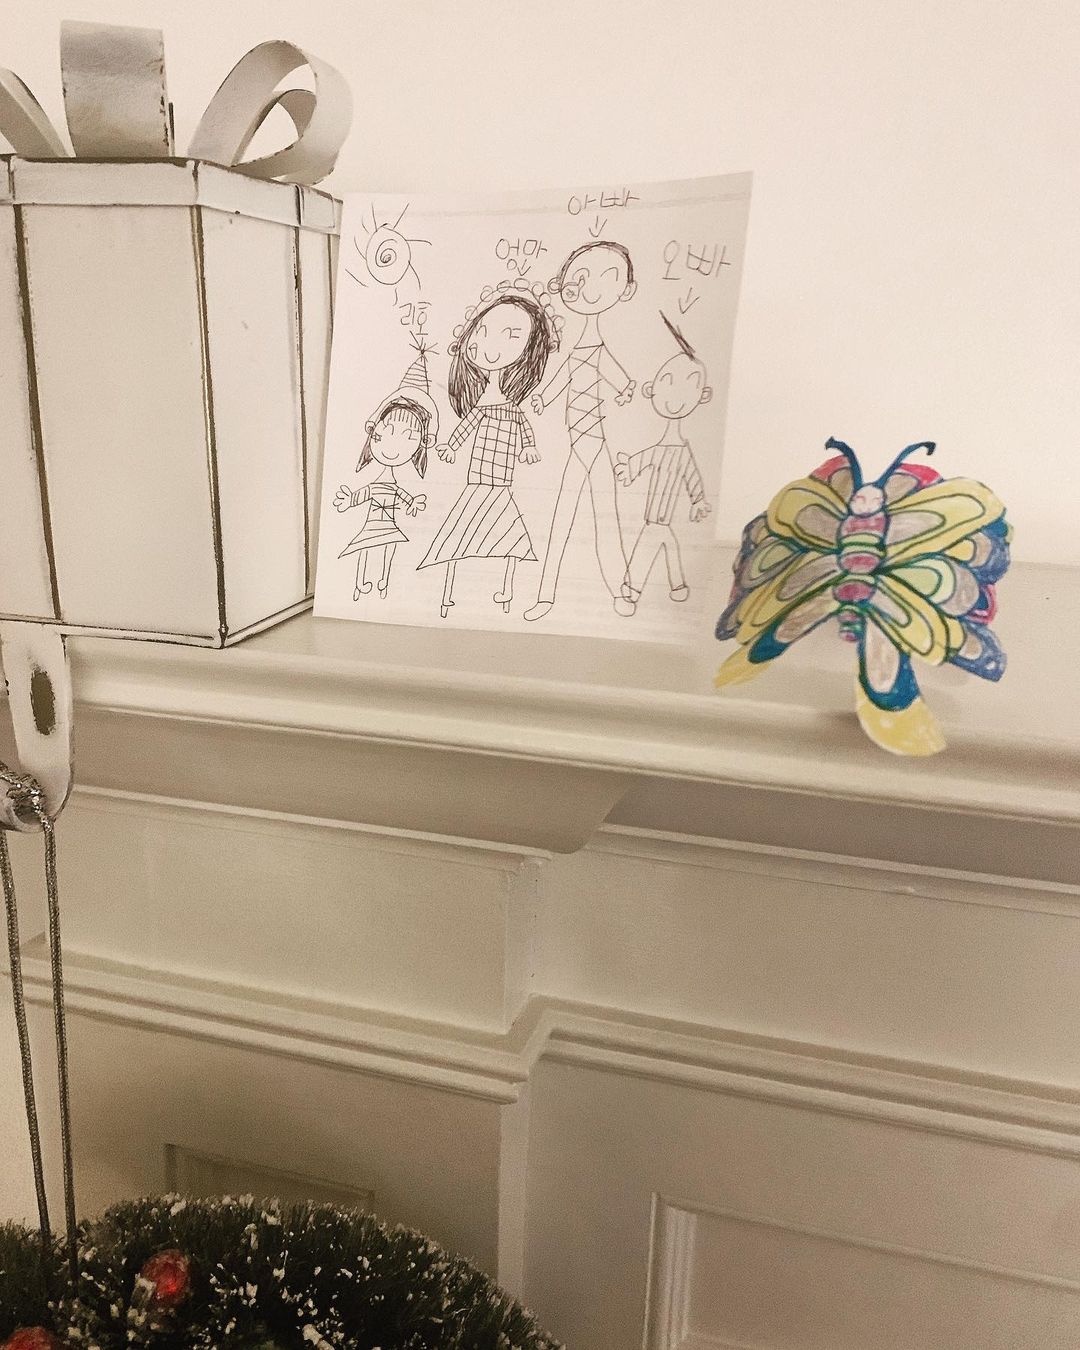 ソン・テヨン、娘リホちゃんが描いた家族の絵を公開